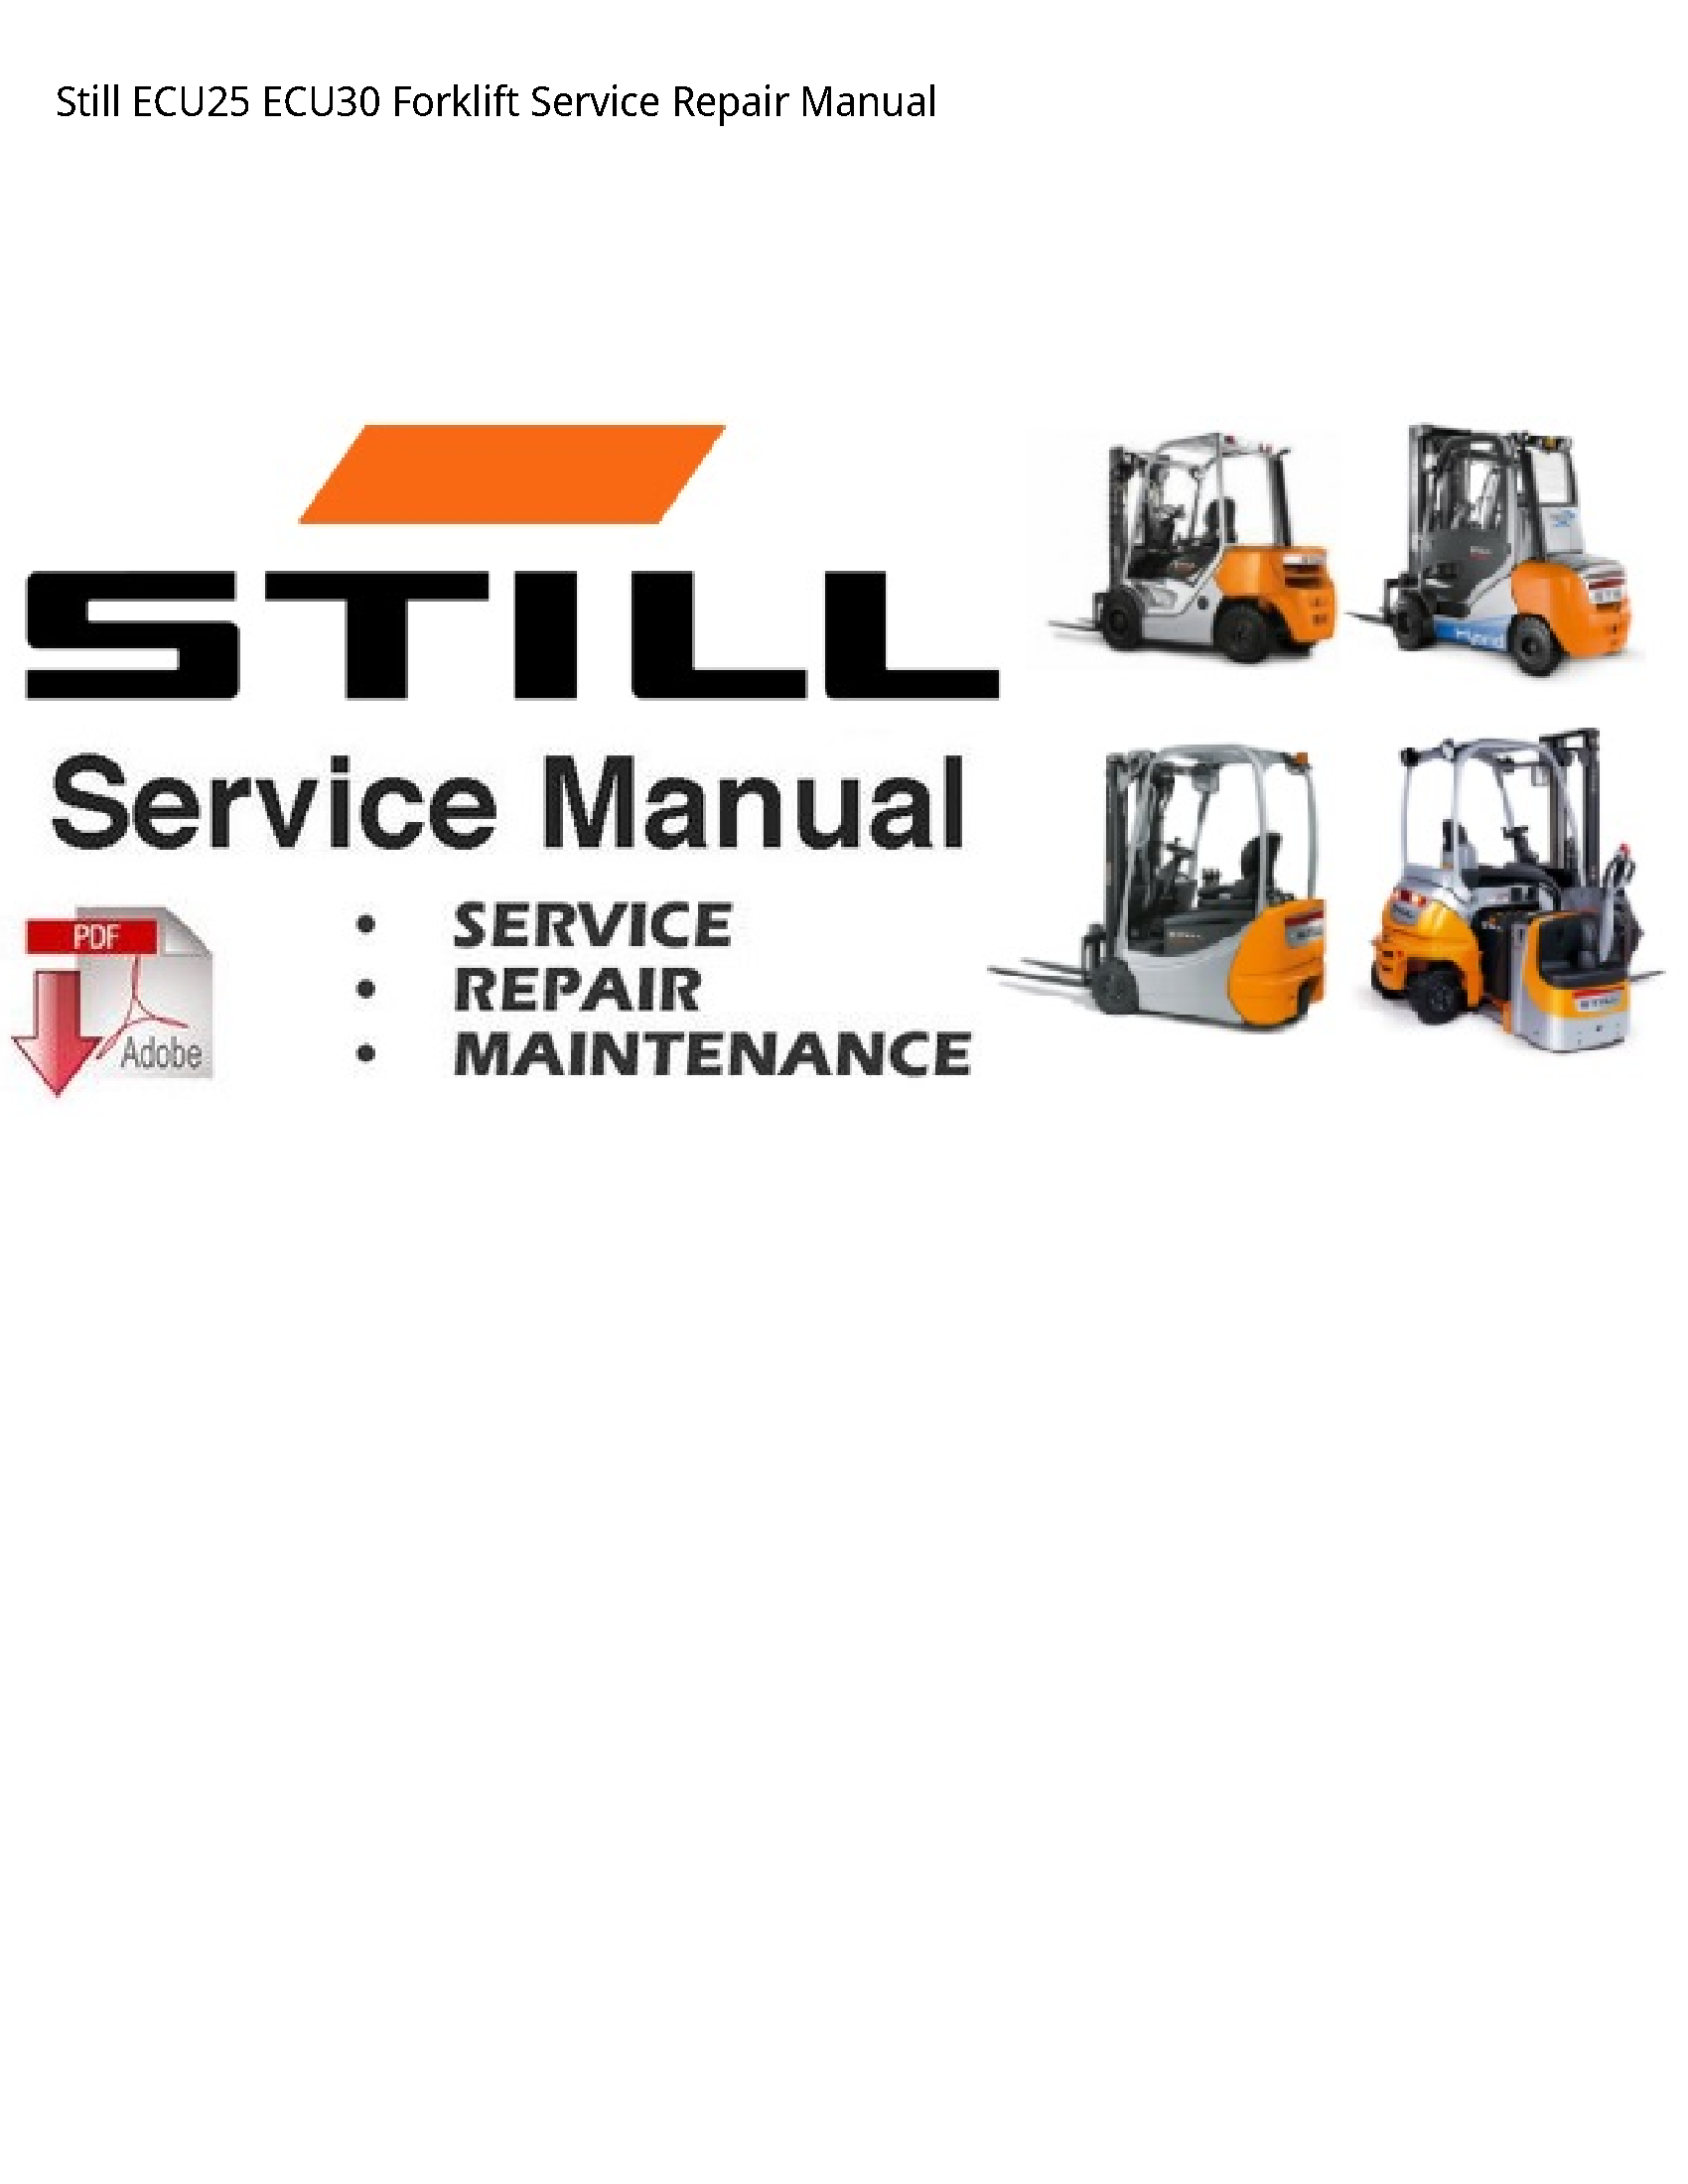 Still ECU25 Forklift manual